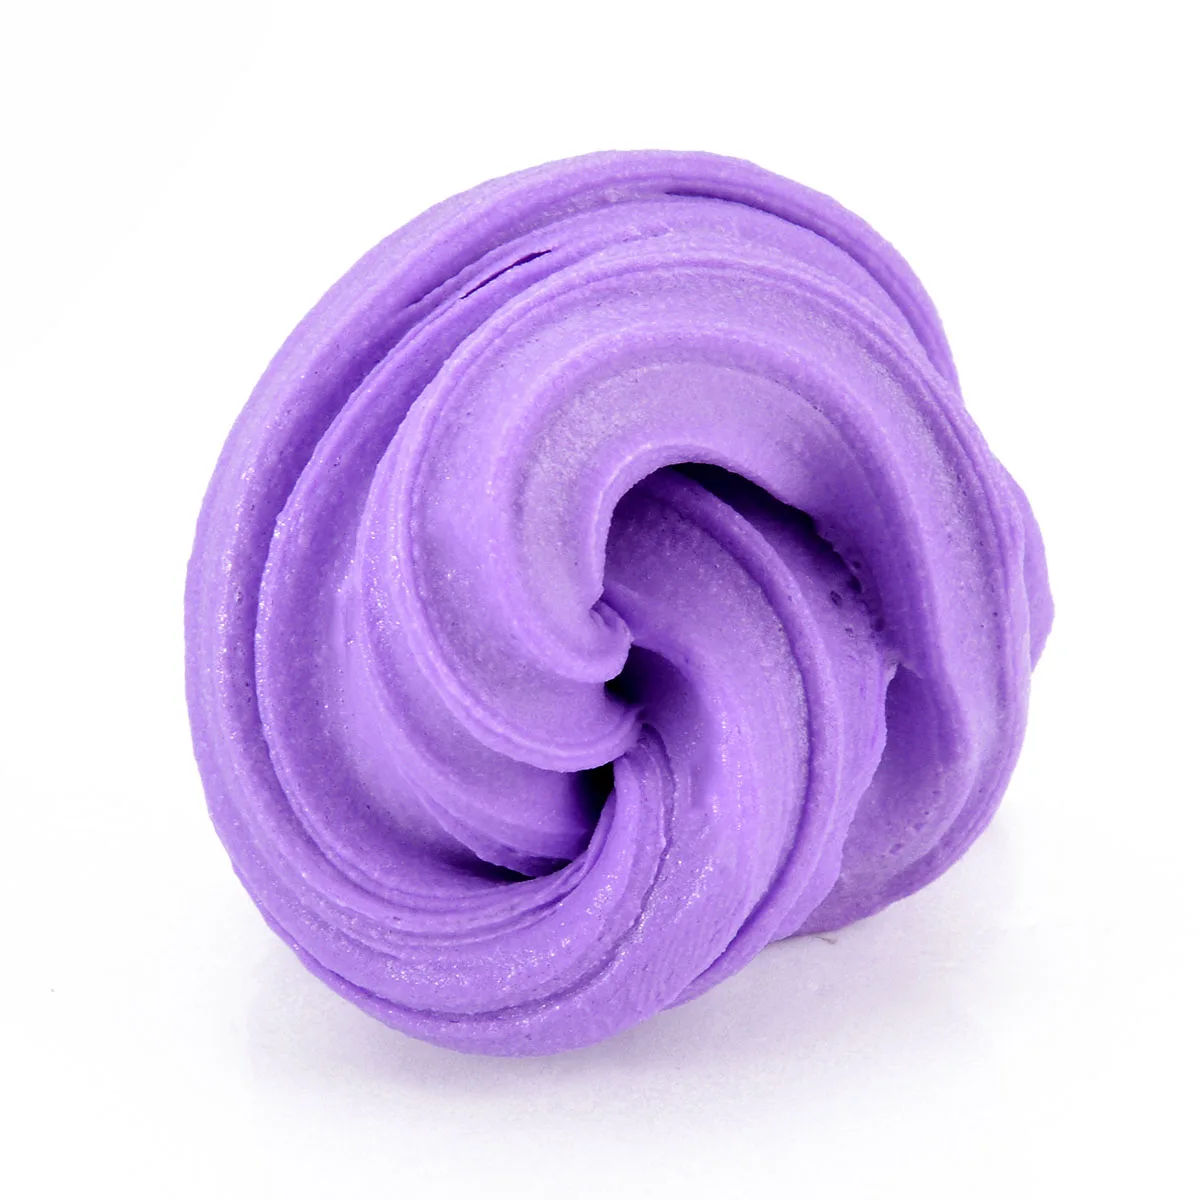 60 мл пушистый слизик, цветные грязевые игрушки, подарок для детей, уменьшенный стресс, сделай сам, светильник, мягкие антистрессовые детские игрушки, карамельный цвет, глина для моделирования - Цвет: Purple